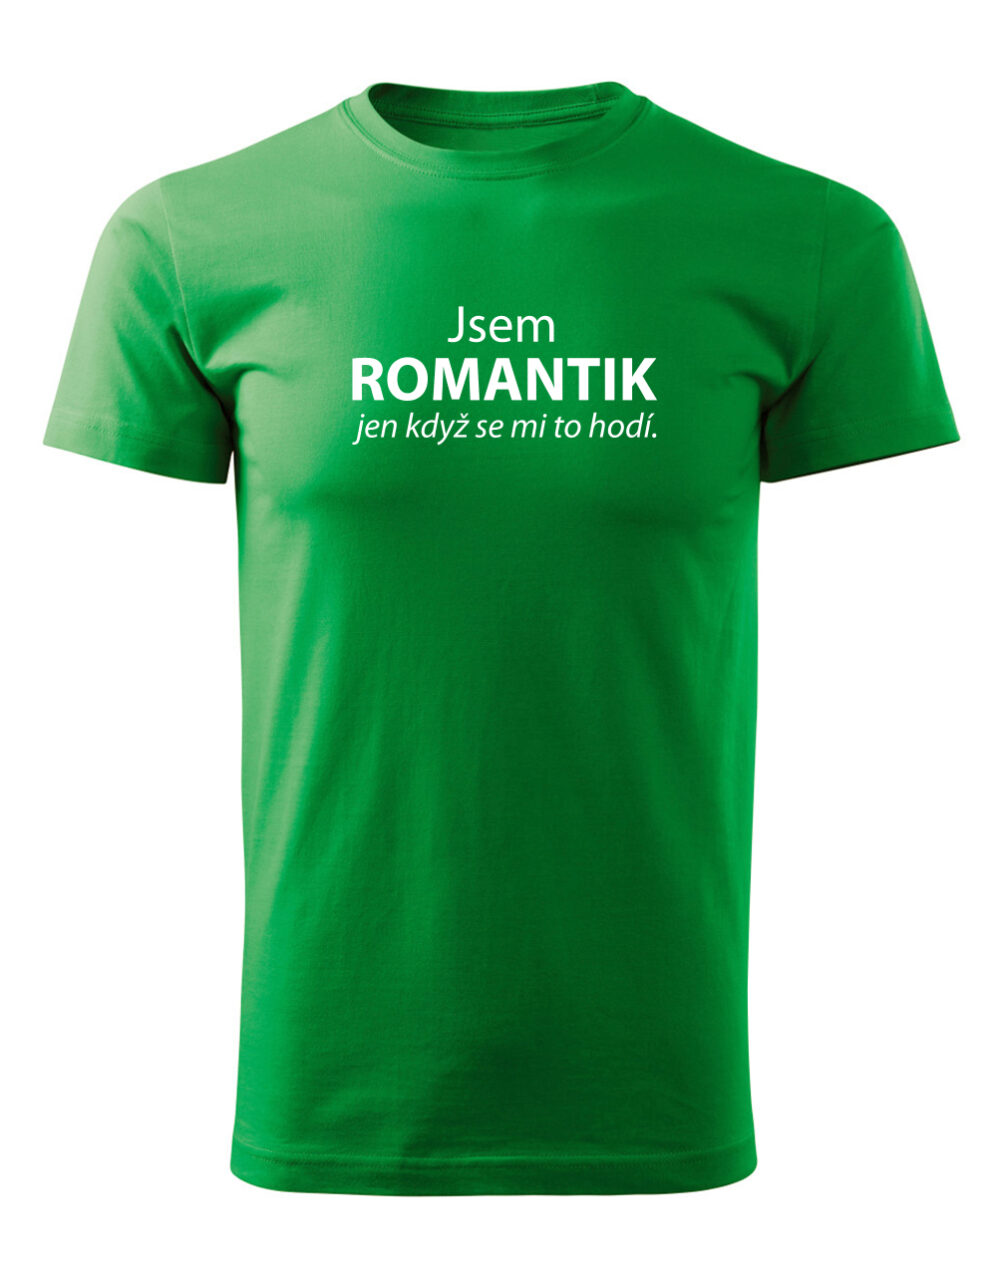 Pánské tričko s potiskem Jsem romantik světle zelená